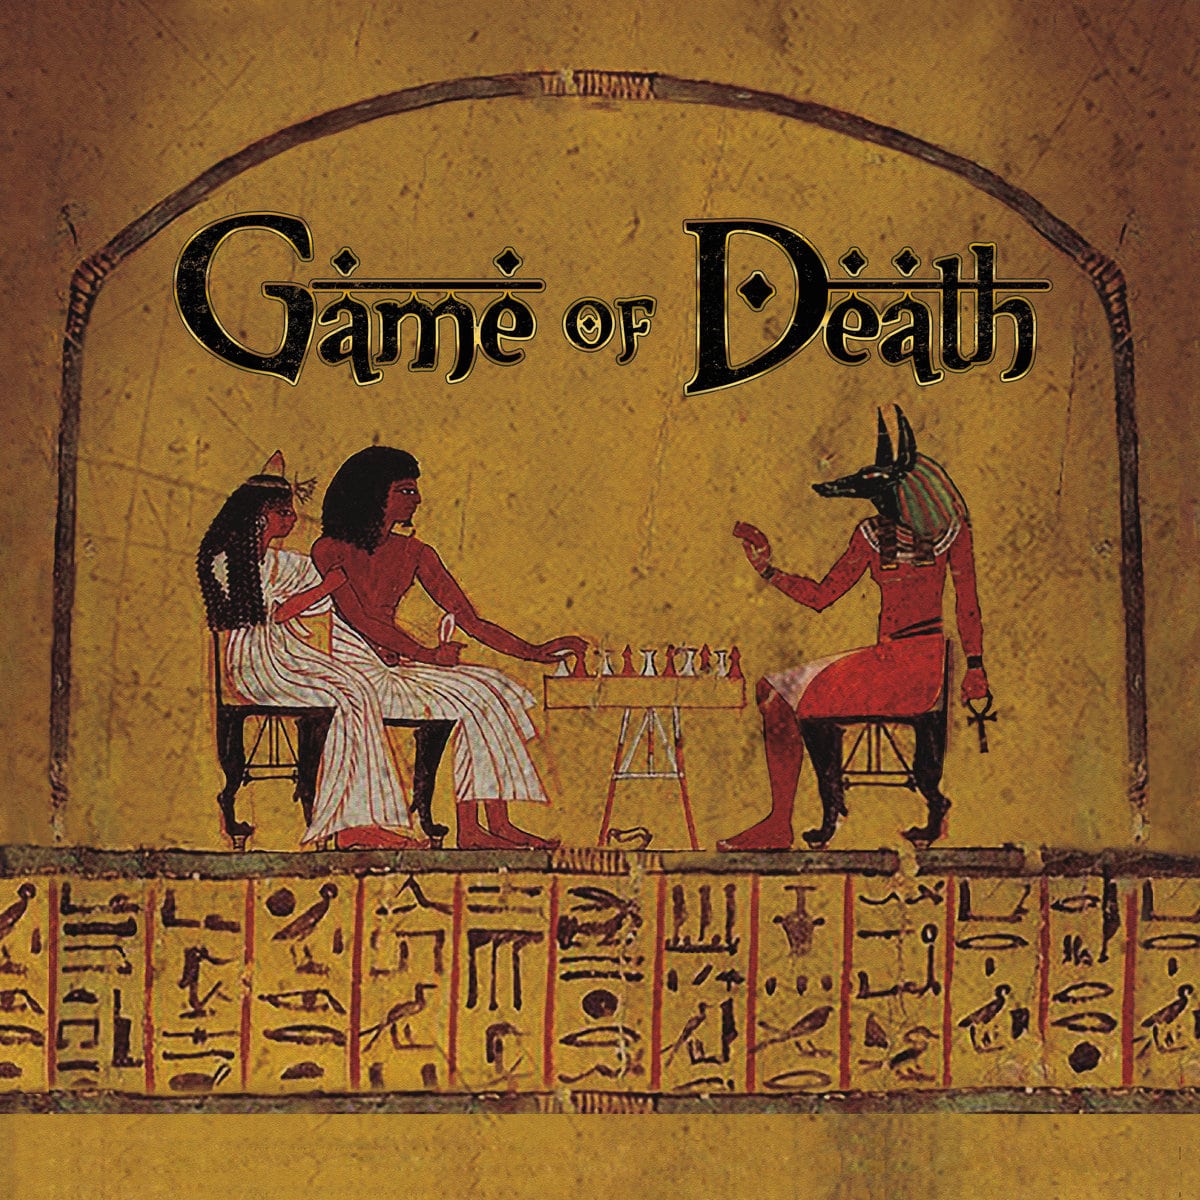 Gensu Dean & Wise Intelligent - "Game of Death" (Release)